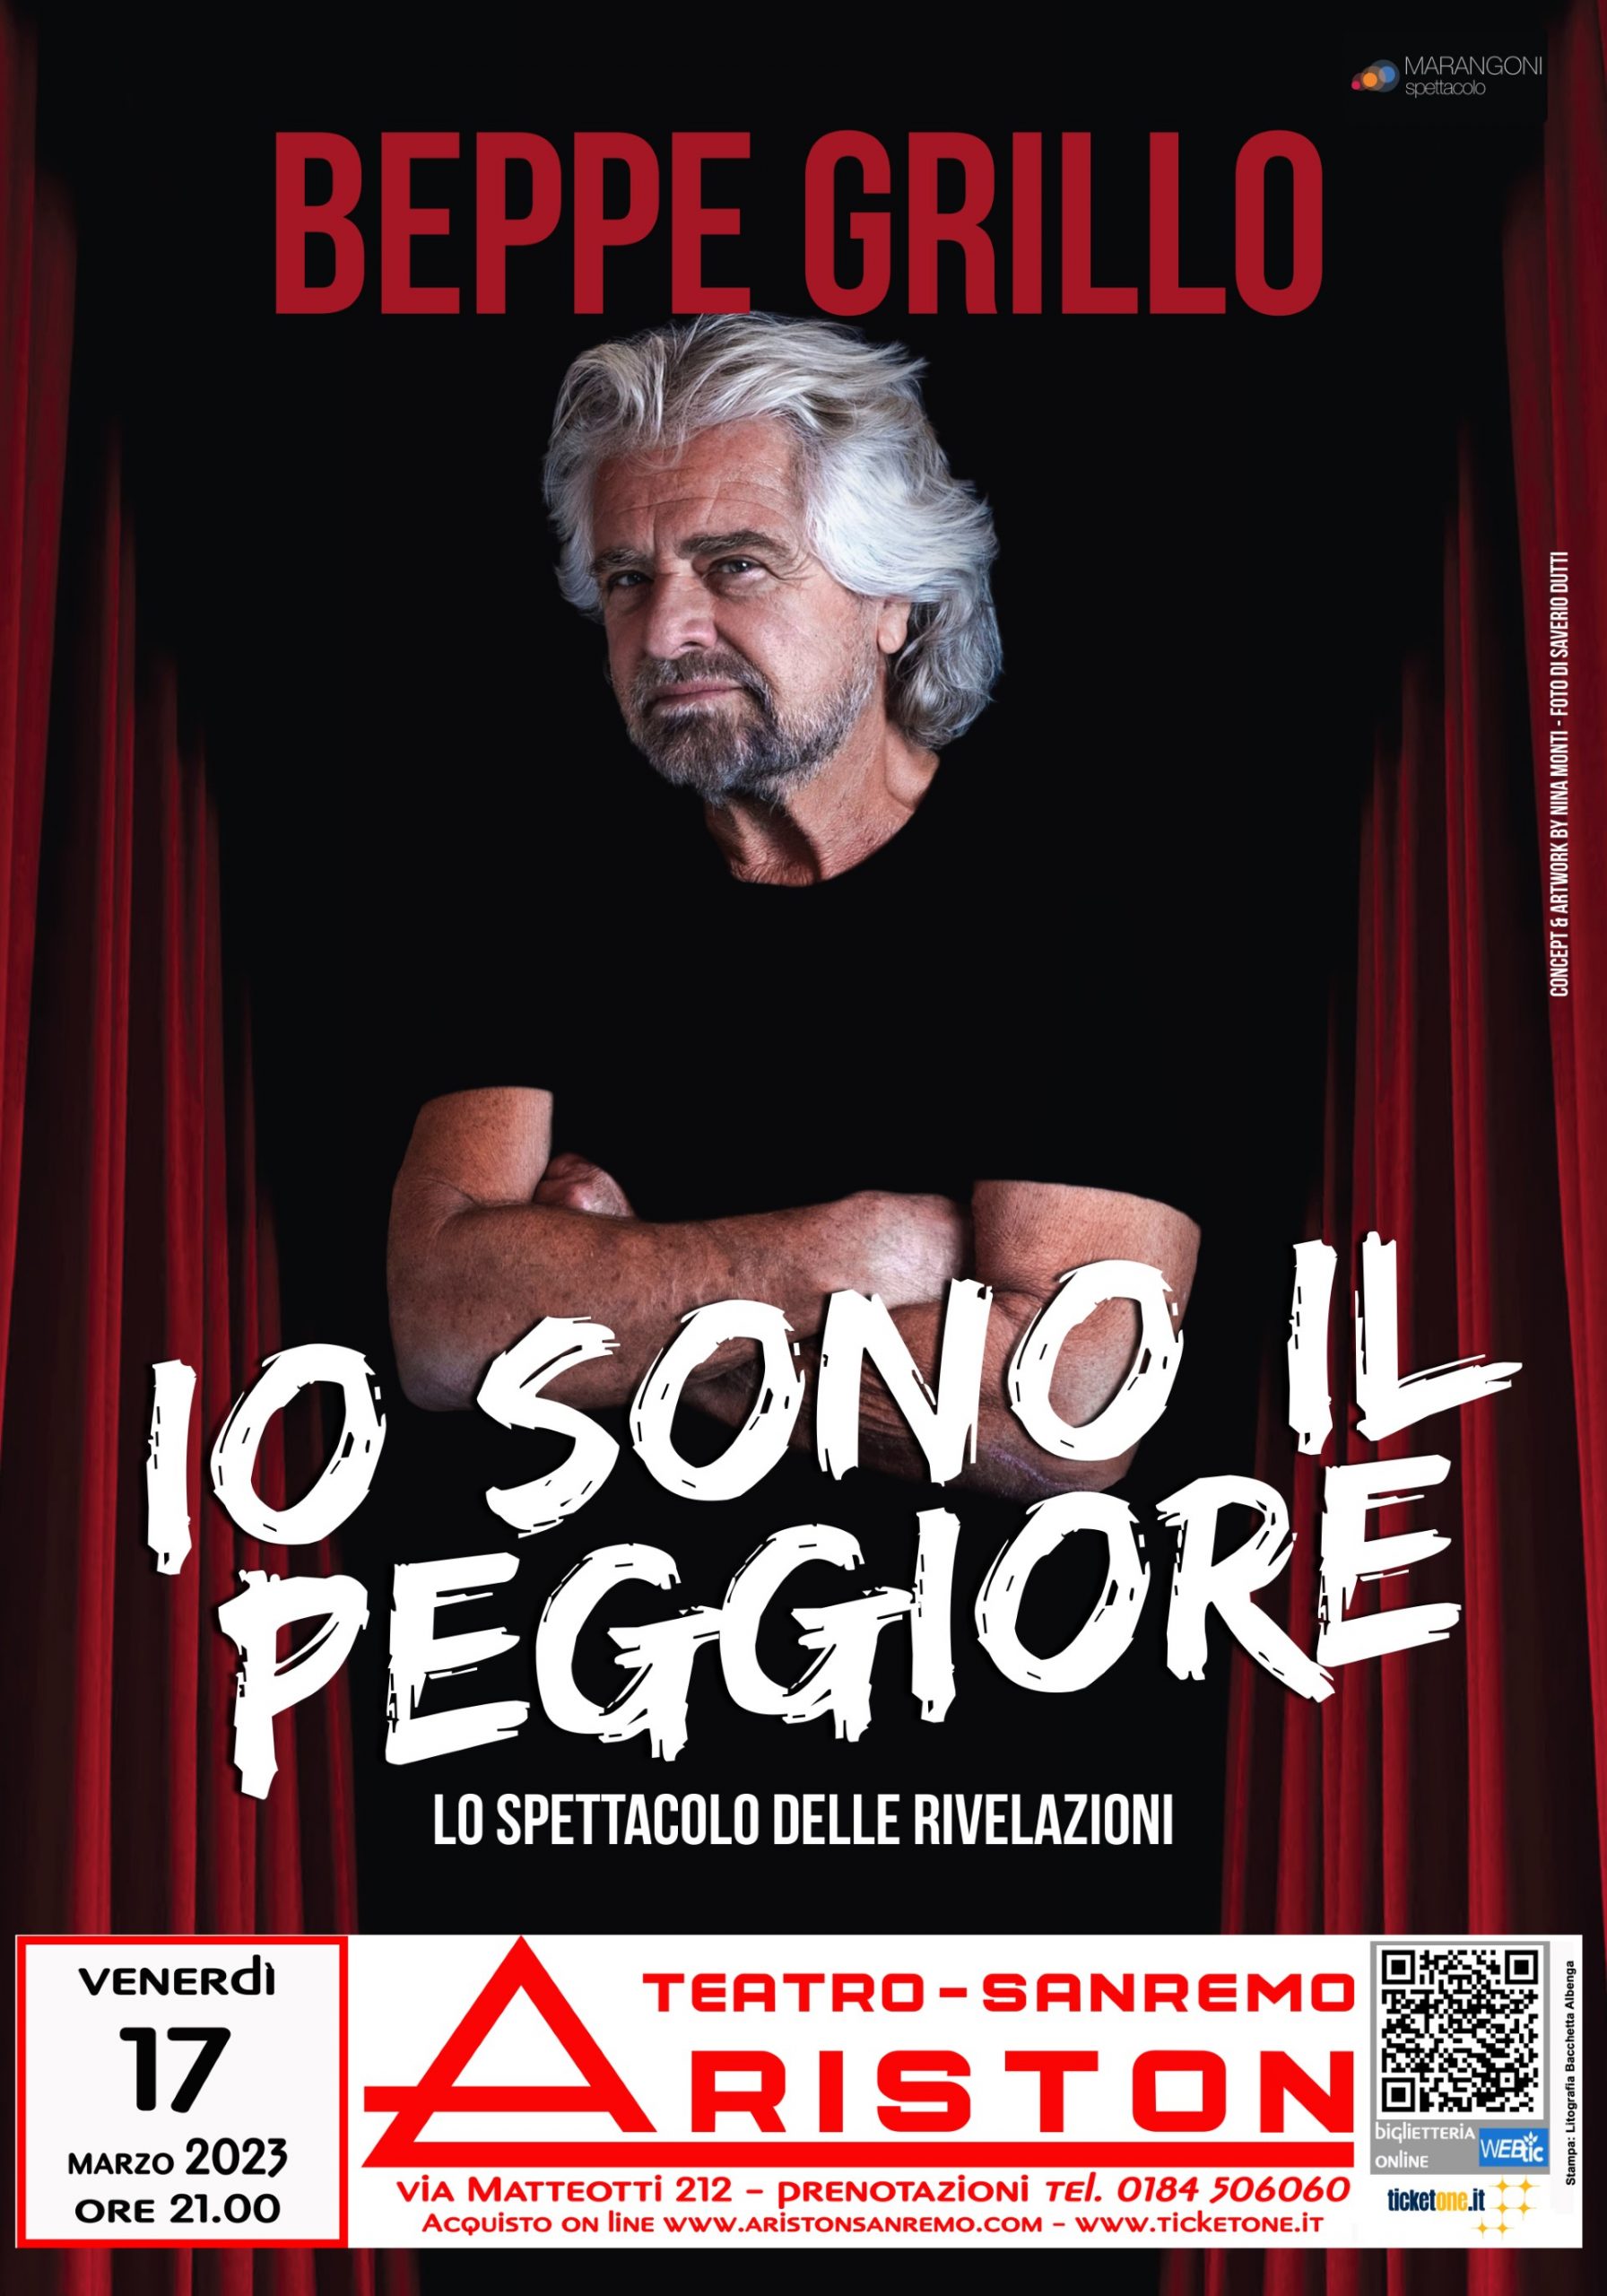  Beppe Grillo all’Ariston con “Io sono il peggiore” venerdì 17 marzo